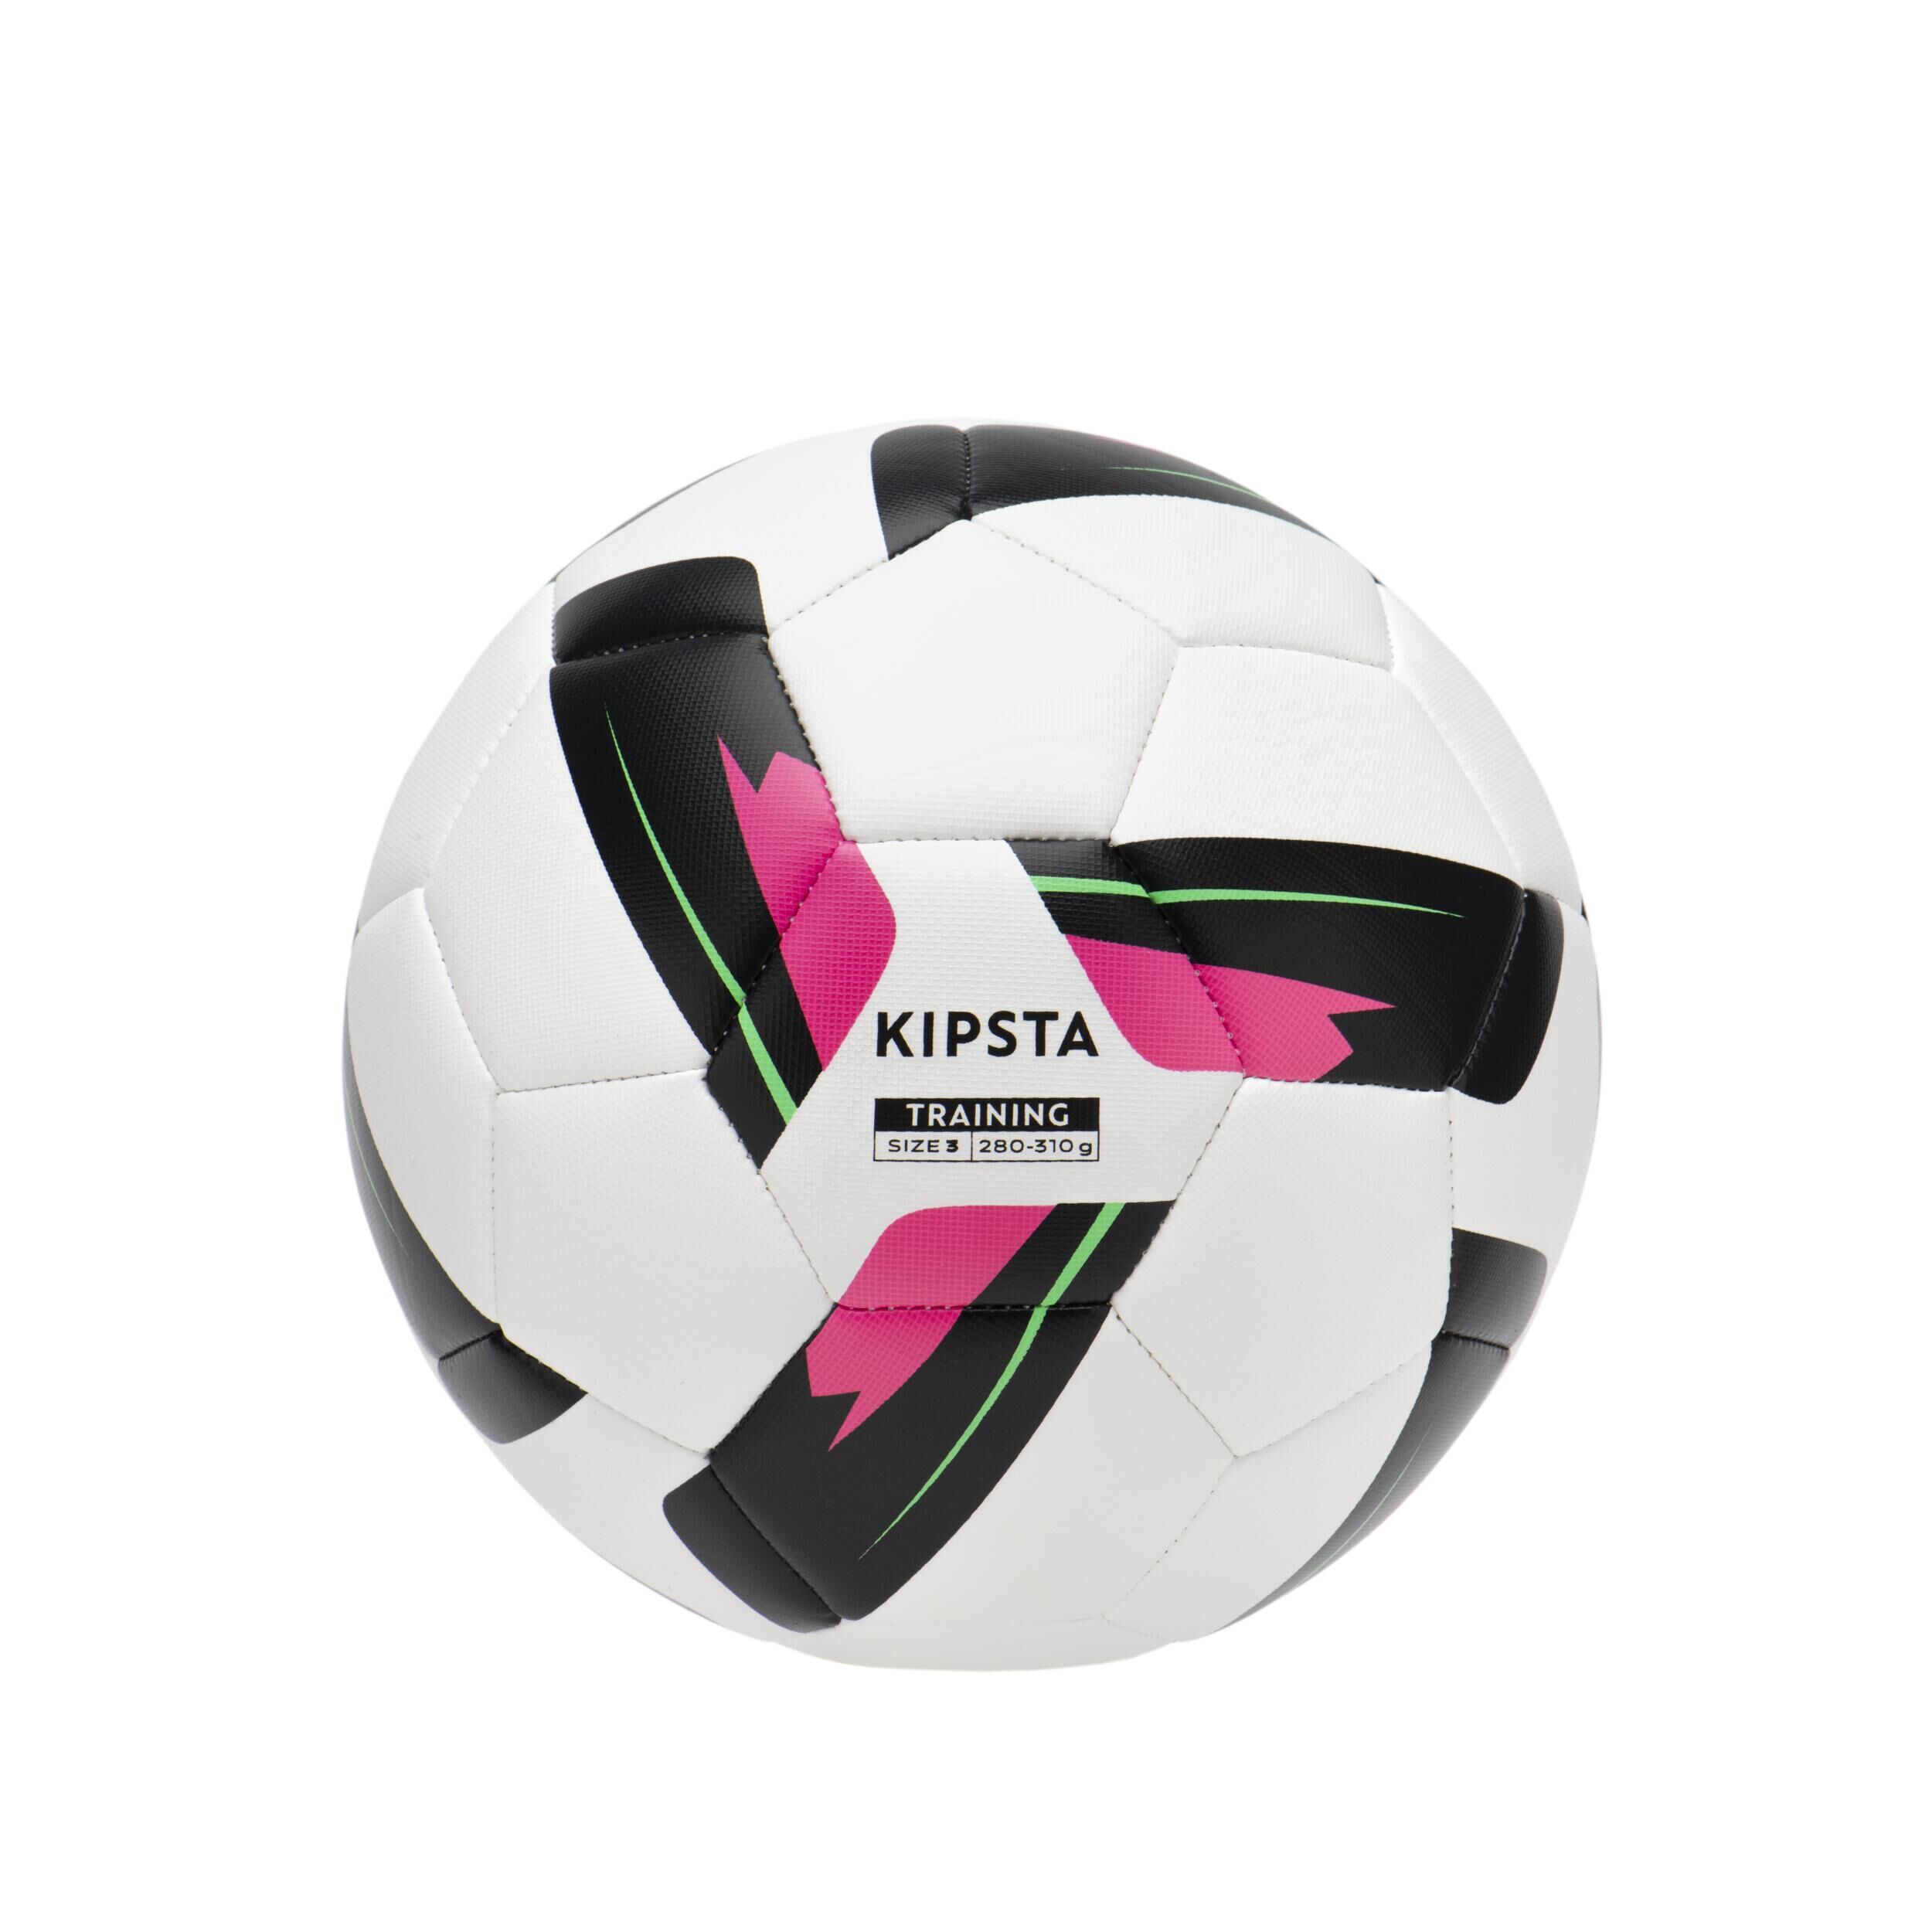 KIPSTA Size 3 Machine-Stitched Football Training Ball - White